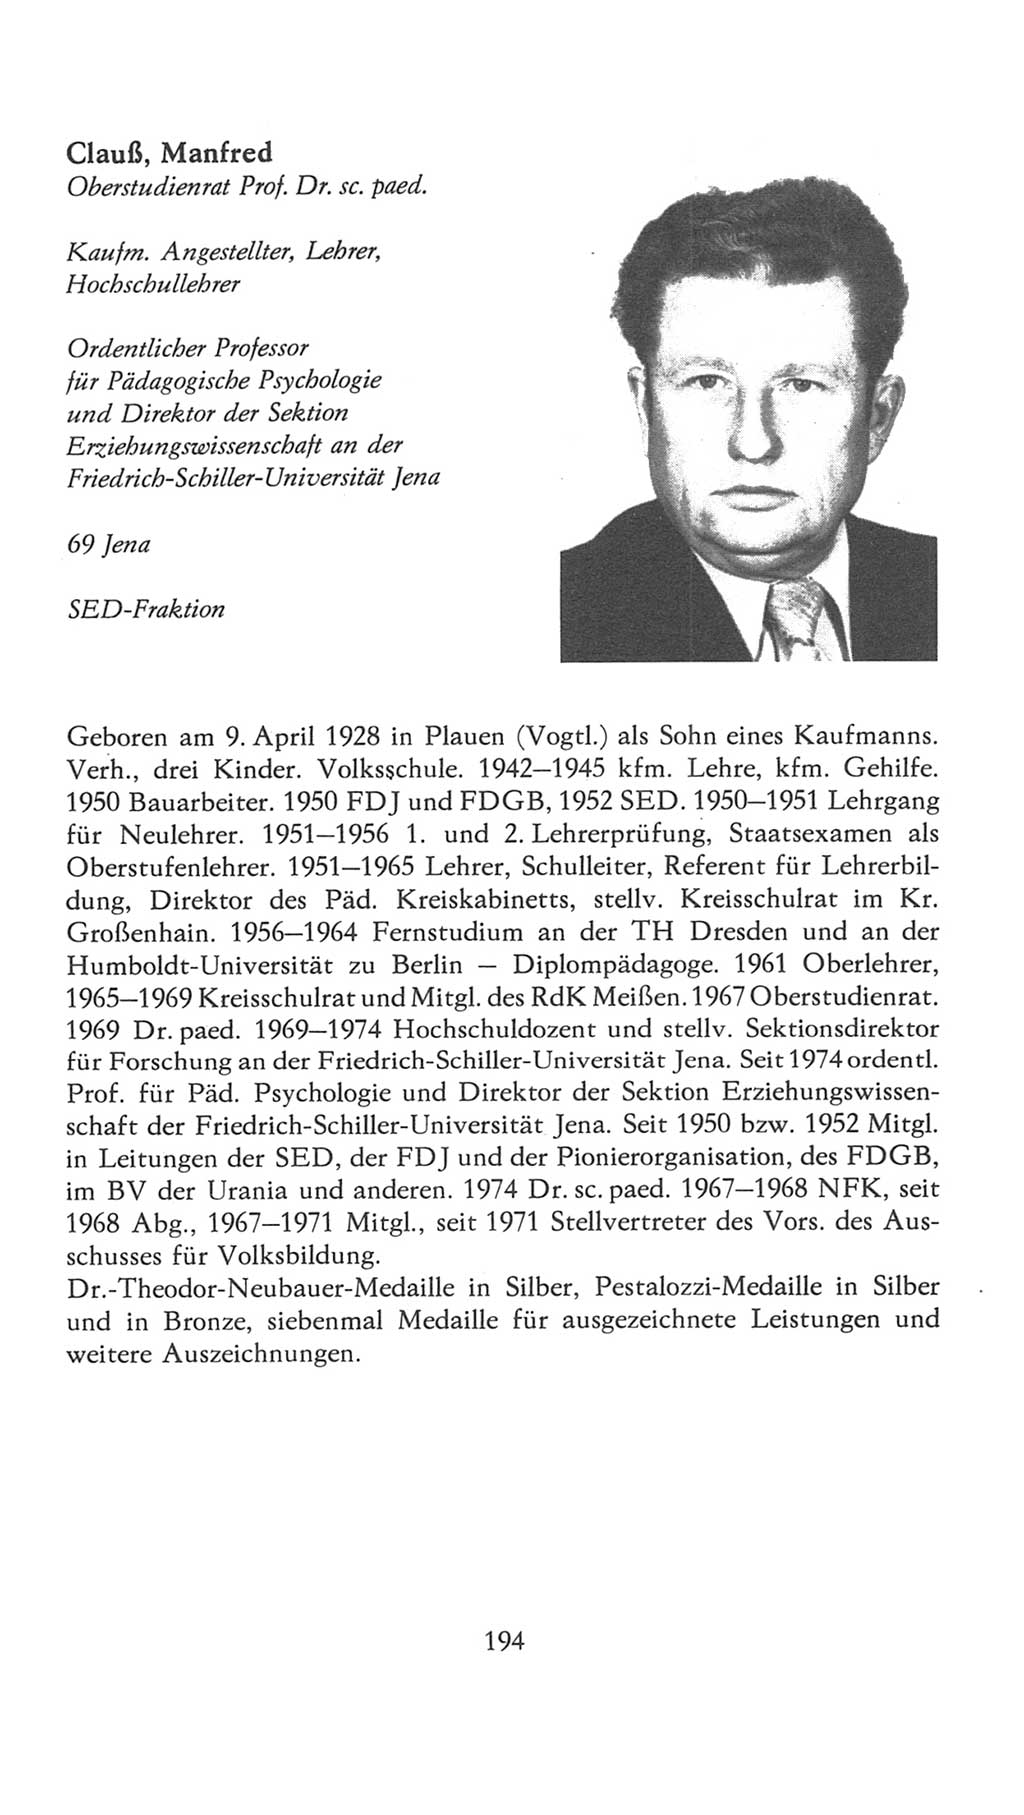 Volkskammer (VK) der Deutschen Demokratischen Republik (DDR), 7. Wahlperiode 1976-1981, Seite 194 (VK. DDR 7. WP. 1976-1981, S. 194)